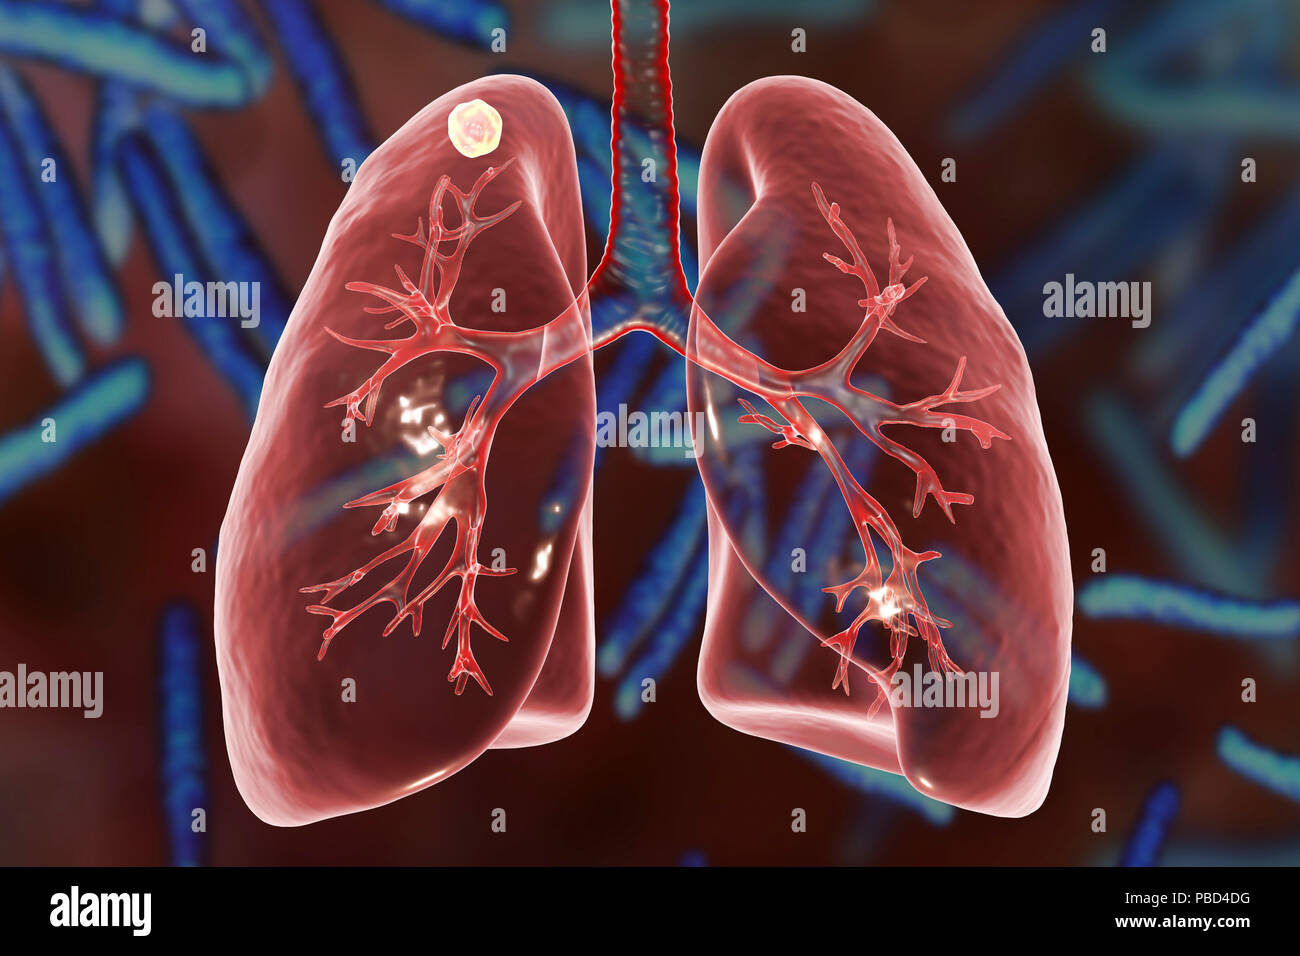 Sekundäre Tuberkuloseinfektion. Computer Abbildung kleine - große Feste noduläre Masse im oberen Lungenlappen rechten Lungenflügel in der Nähe der Lunge Apex entfernt. Bild Hintergrund stellt Abbildung von Mycobacterium Tuberkulose, Bakterien, Erreger der Tuberkulose. Stockfoto